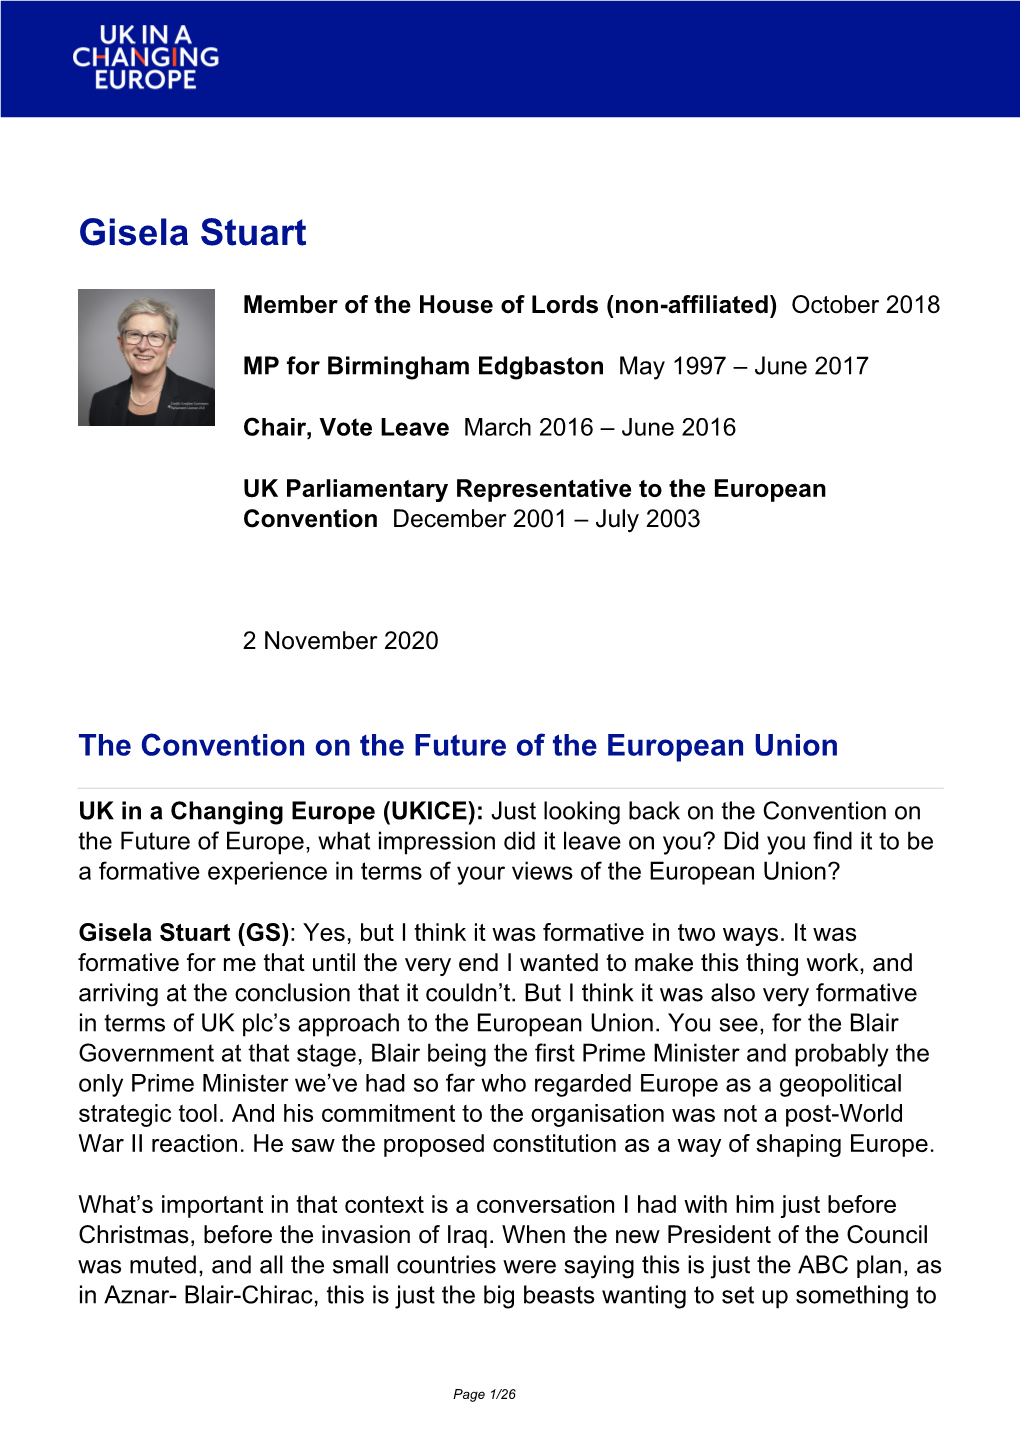 Brexit Interview: Gisela Stuart